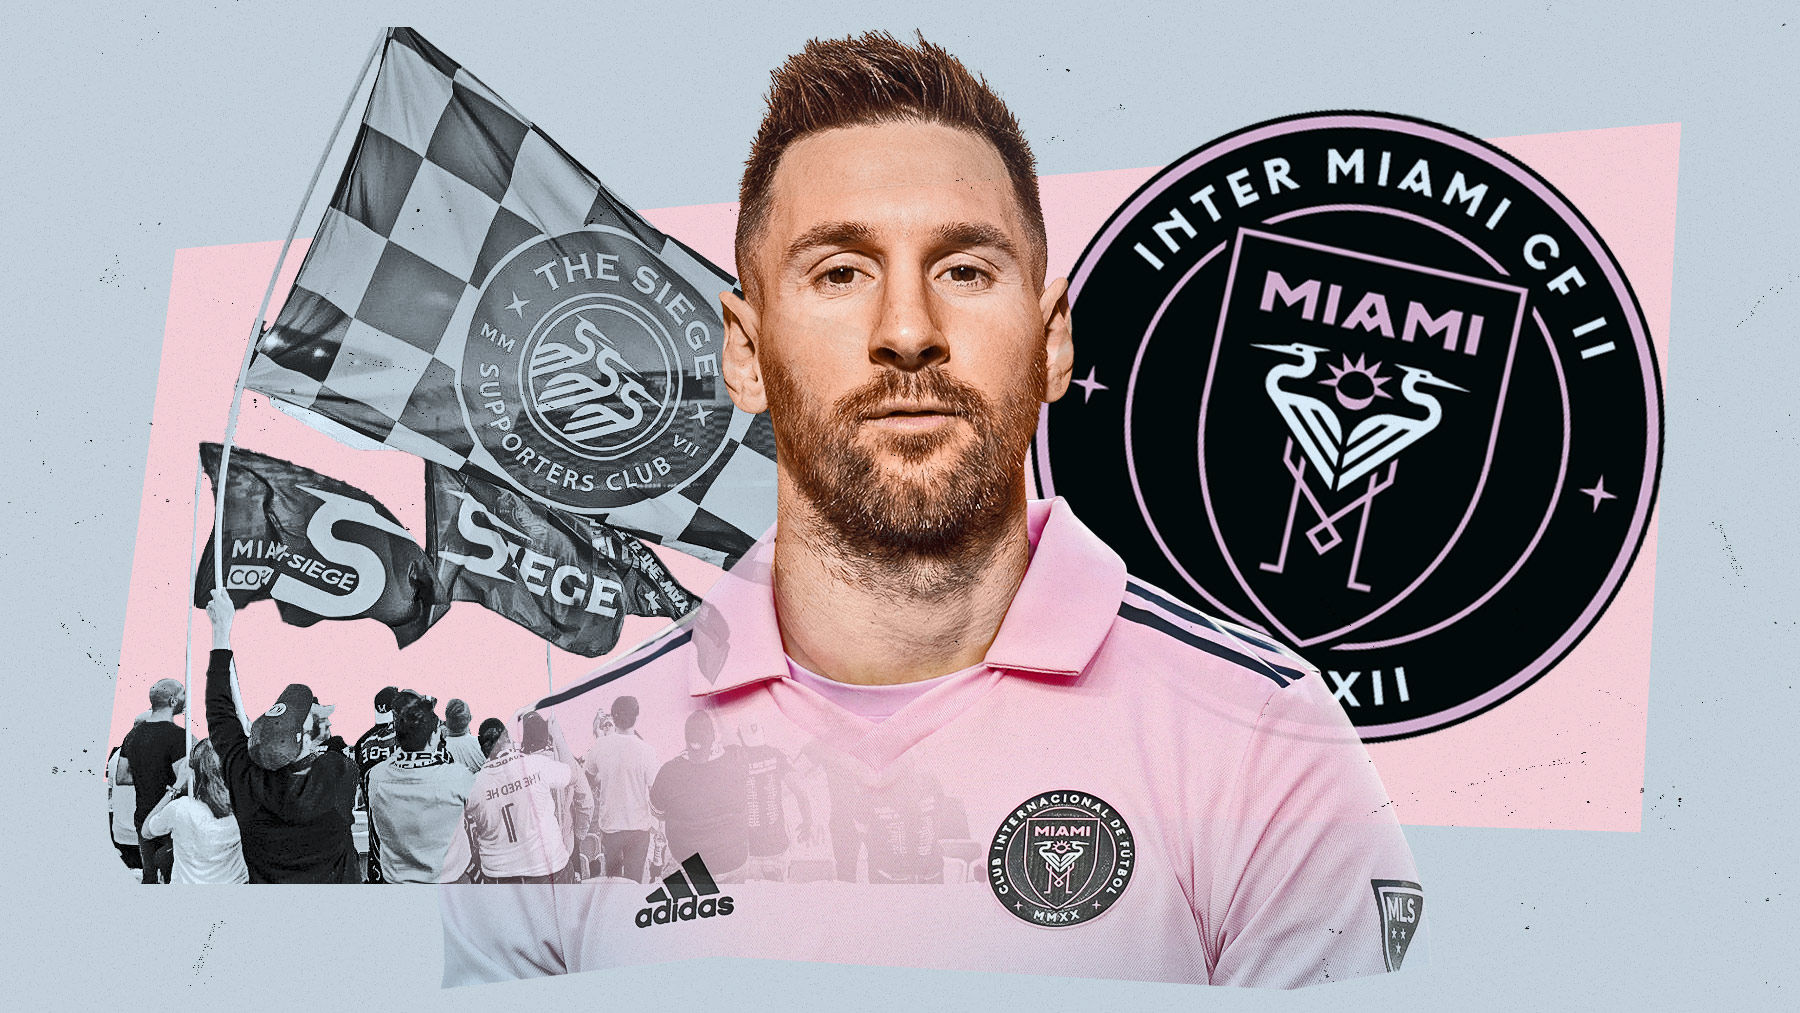 La antigua estrella del Inter Miami se despacha a gusto contra Messi